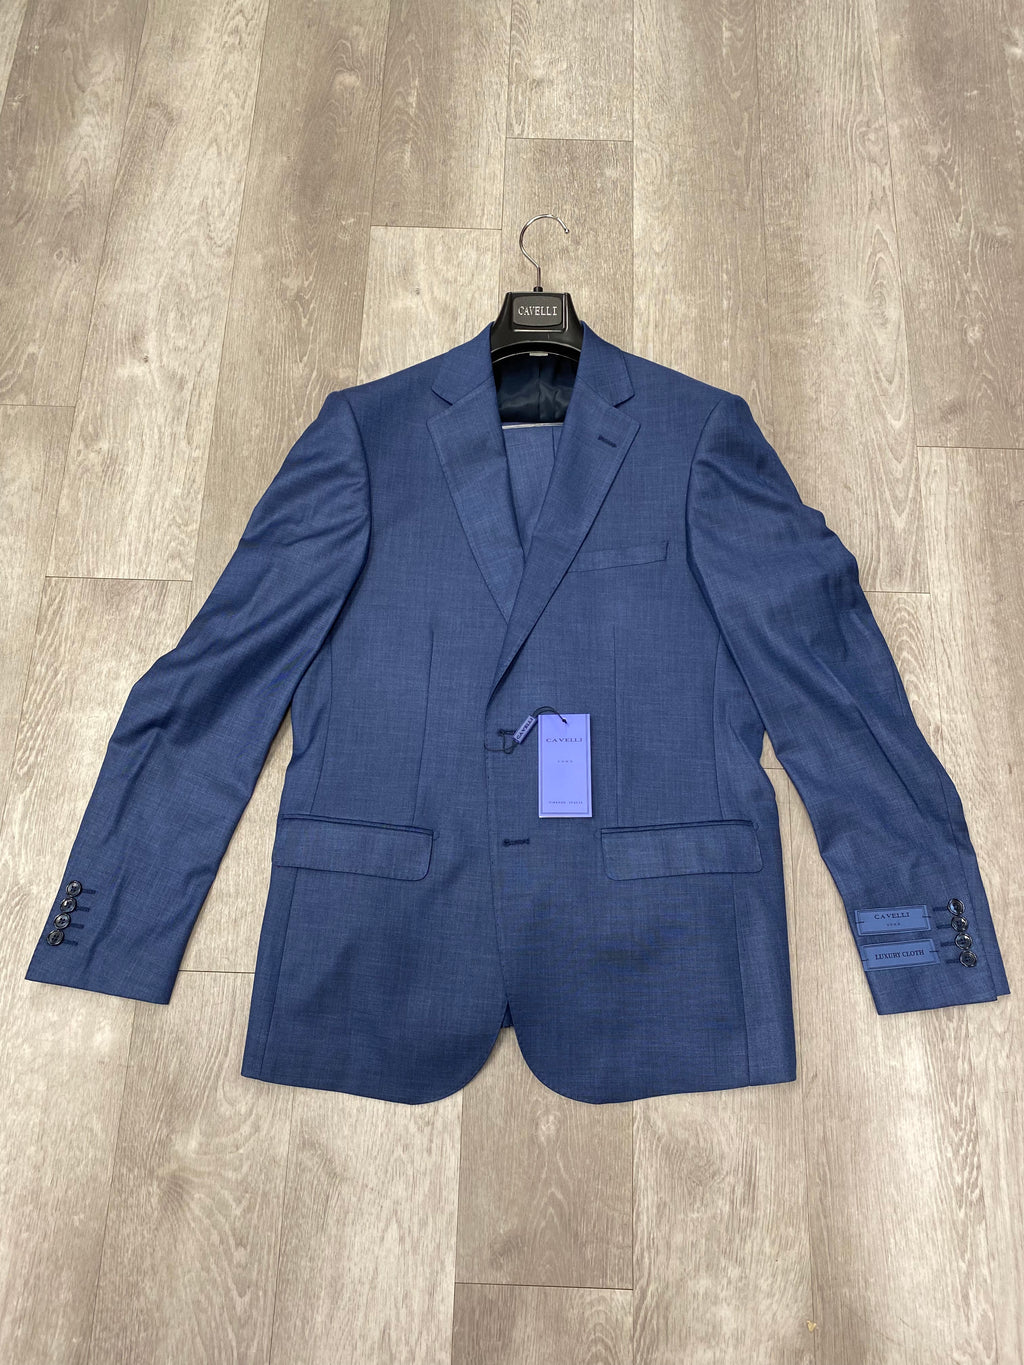 Cavelli Uomo Porto Slim Fit Suit 1986/2 Blue